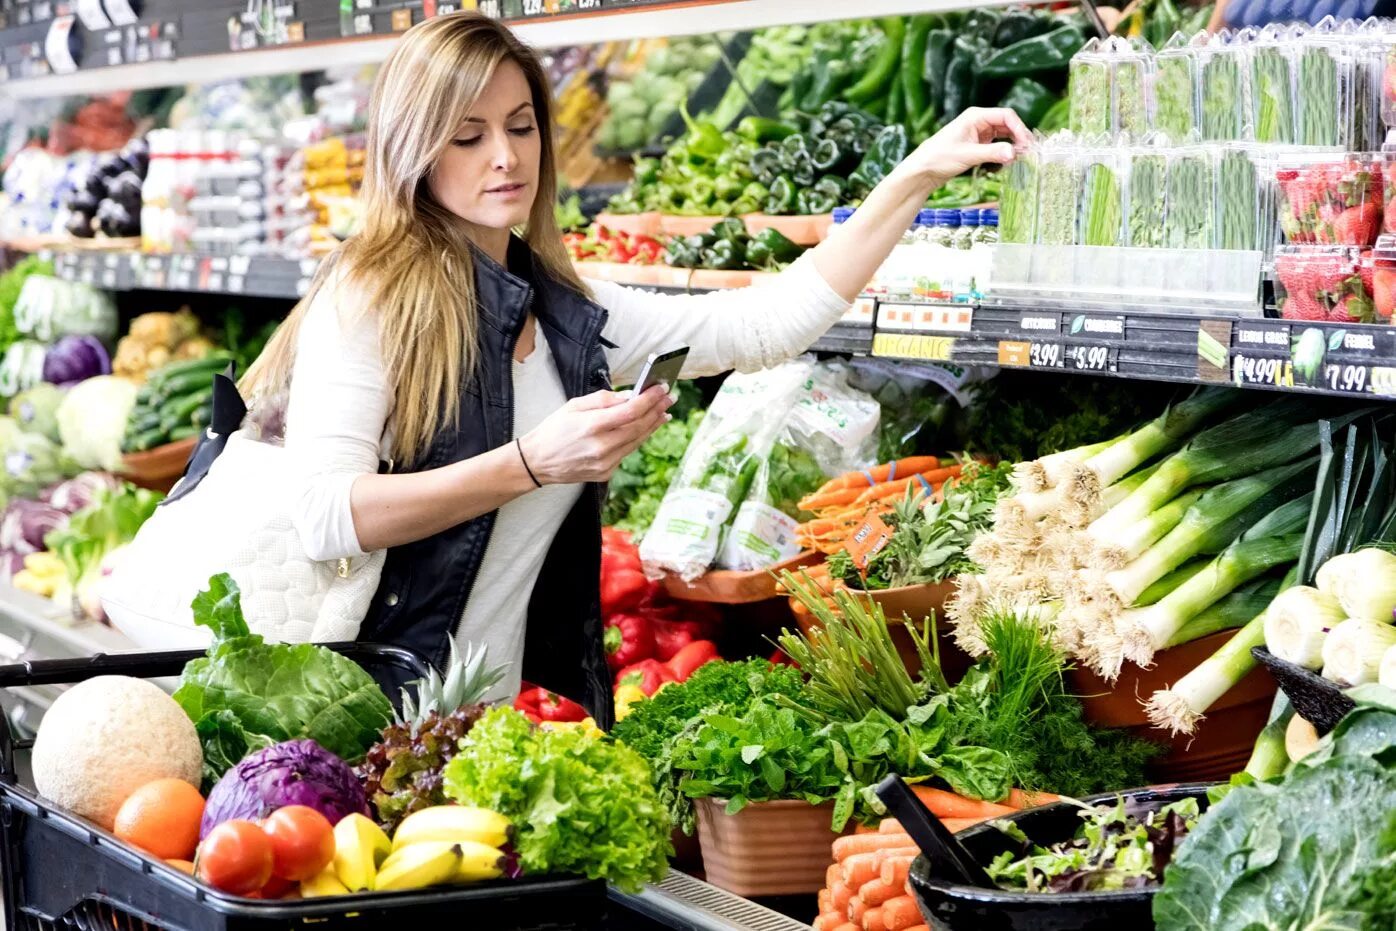 Markets shop ru. Продукты в супермаркете. Девушка на овощном рынке. Девушка в магазине продуктов. Женщина с продуктами.